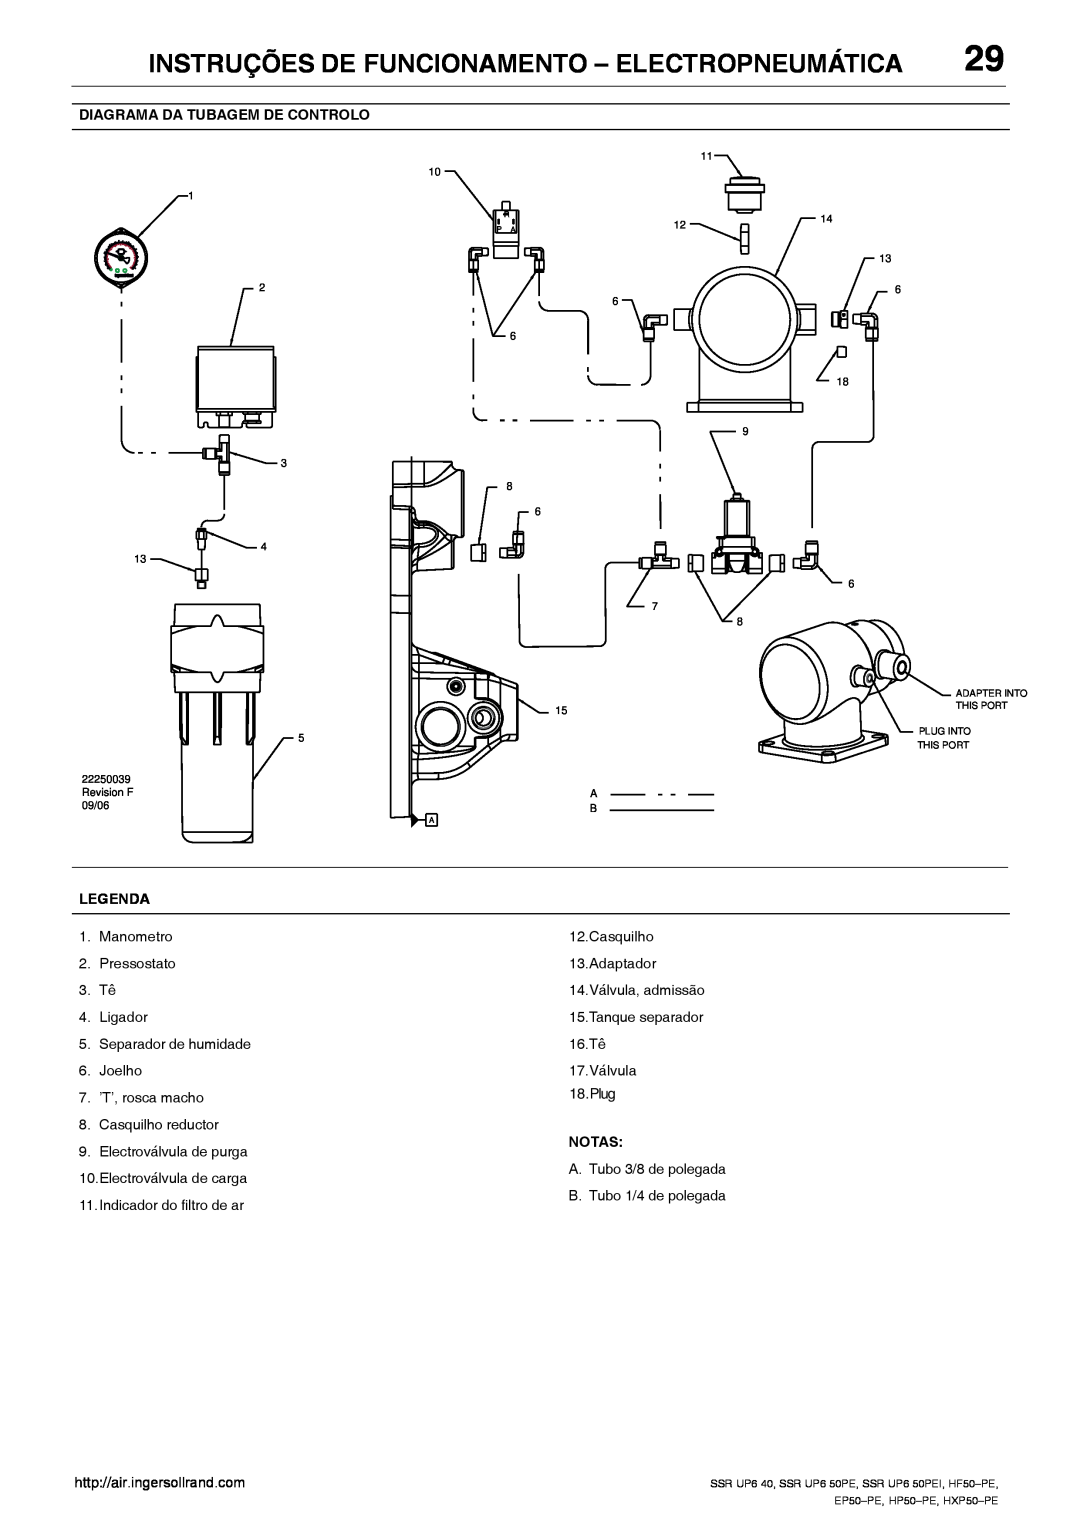 Ingersoll-Rand HP50-PE Instruções De Funcionamento - Electropneumática, Diagrama Da Tubagem De Controlo, Legenda, Notas 